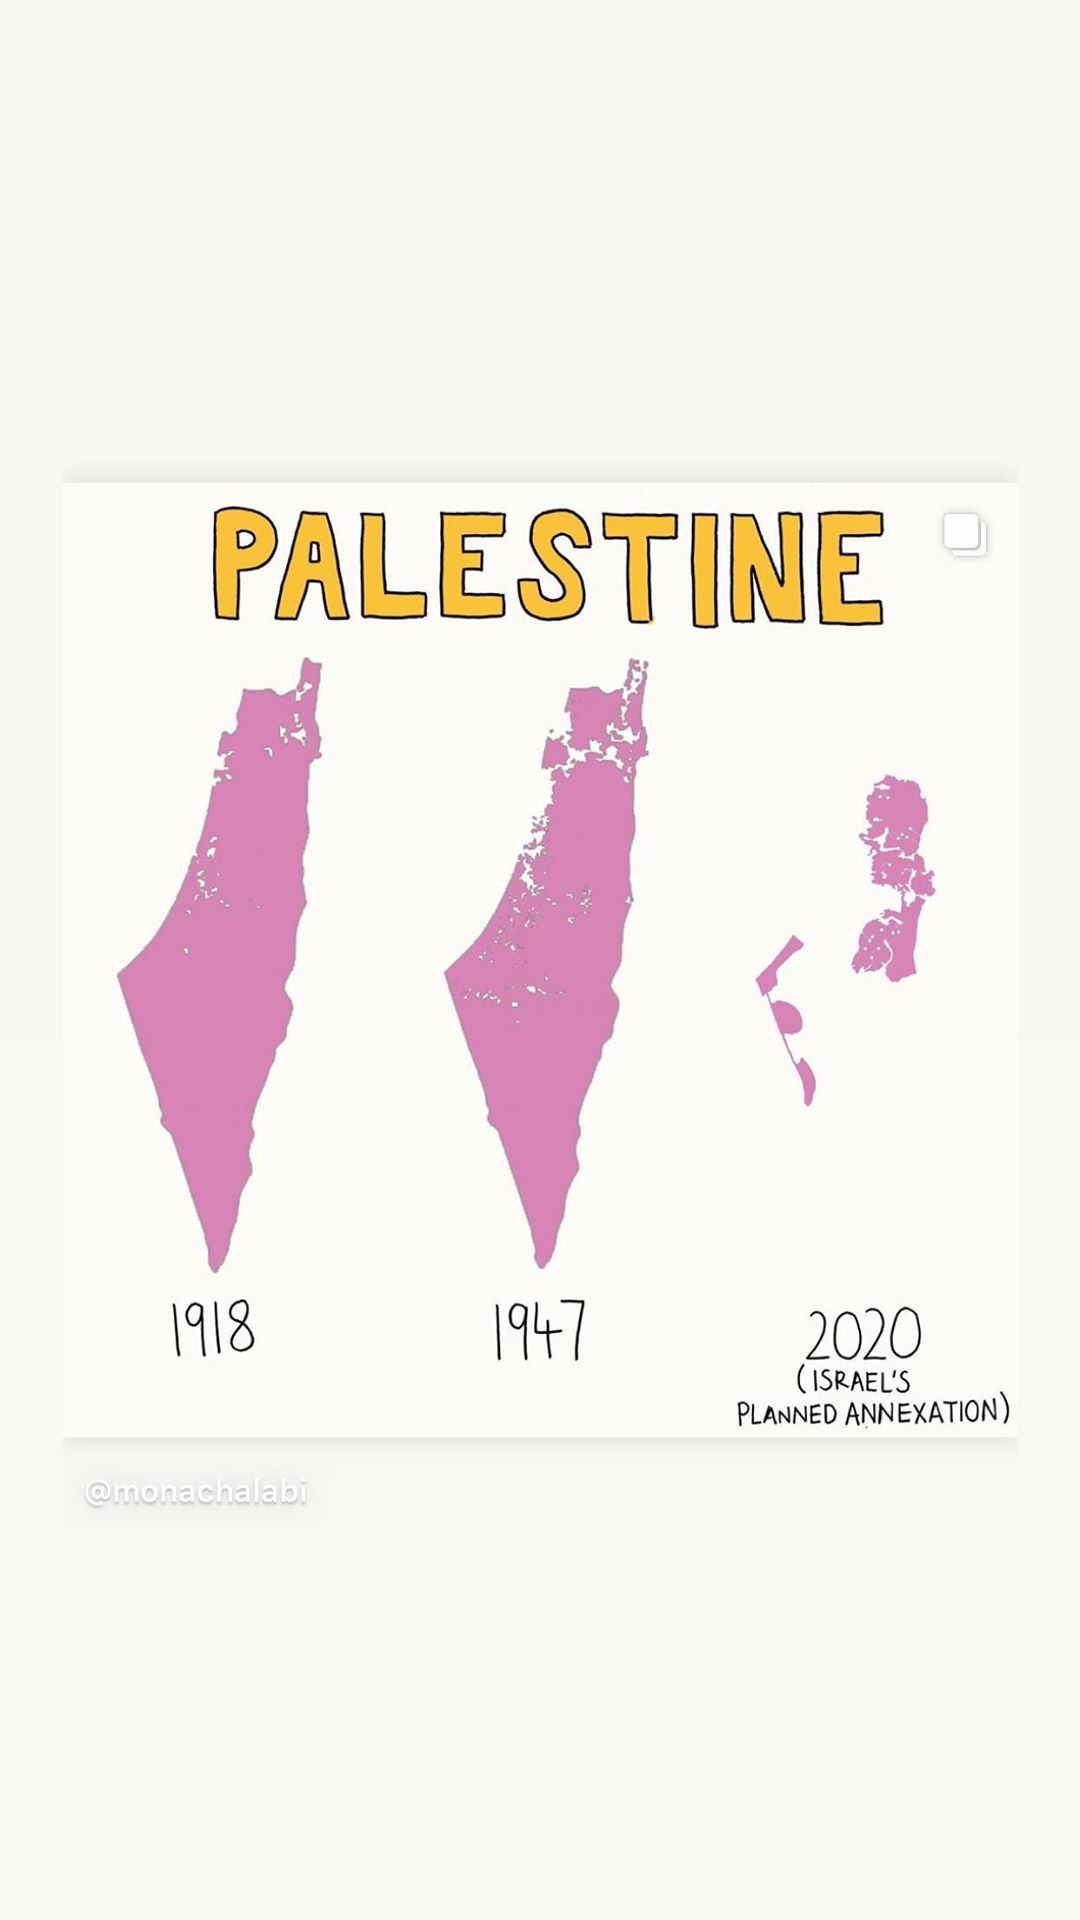 خريطة فلسطين التي نشرتها بيلا حديد فى وقت سابق